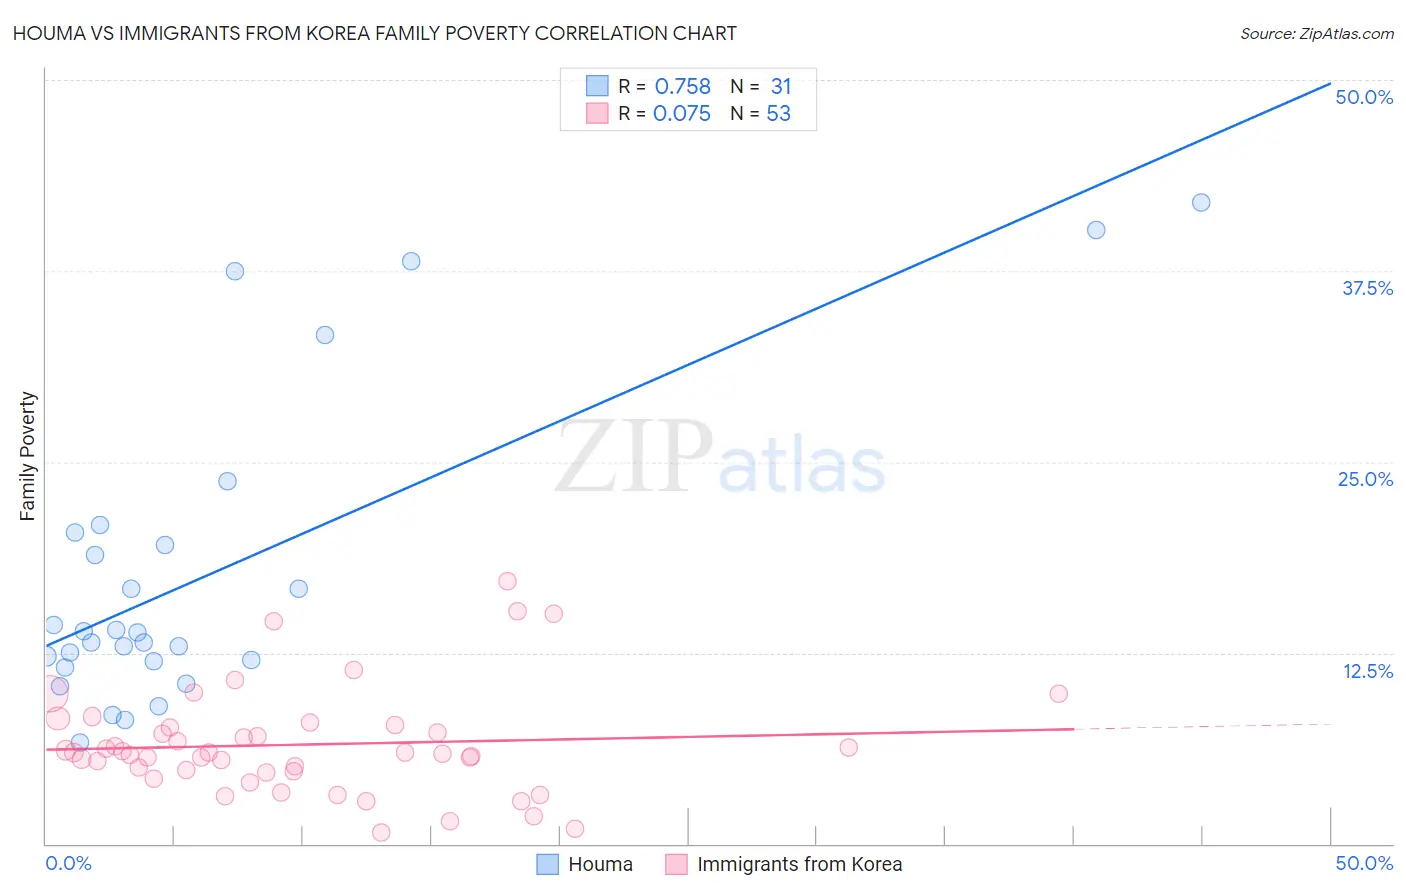 Houma vs Immigrants from Korea Family Poverty